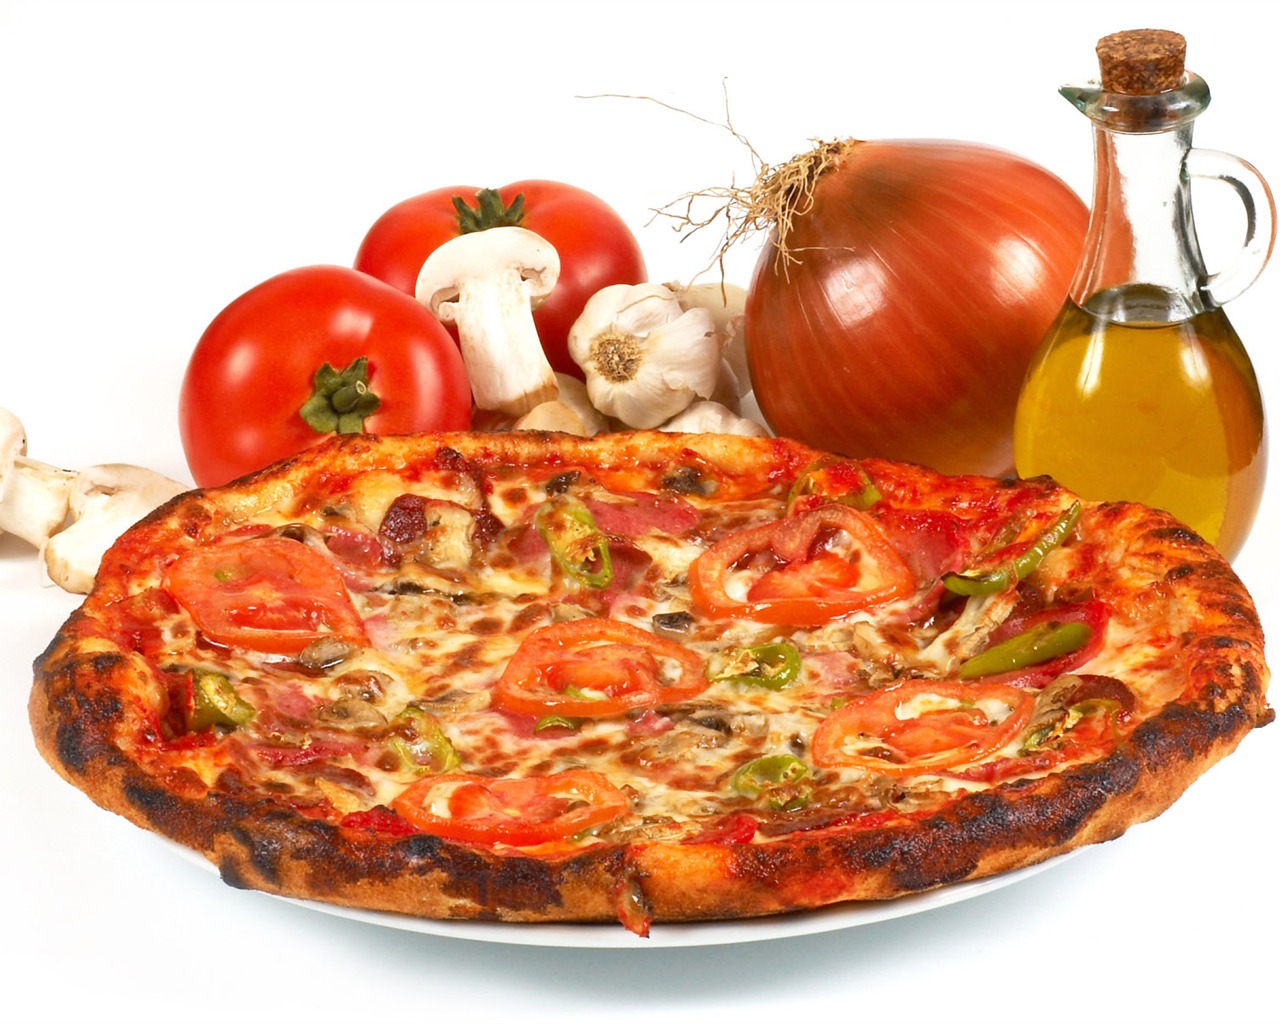 Fondos de pizzerías de Alimentos (4) #16 - 1280x1024